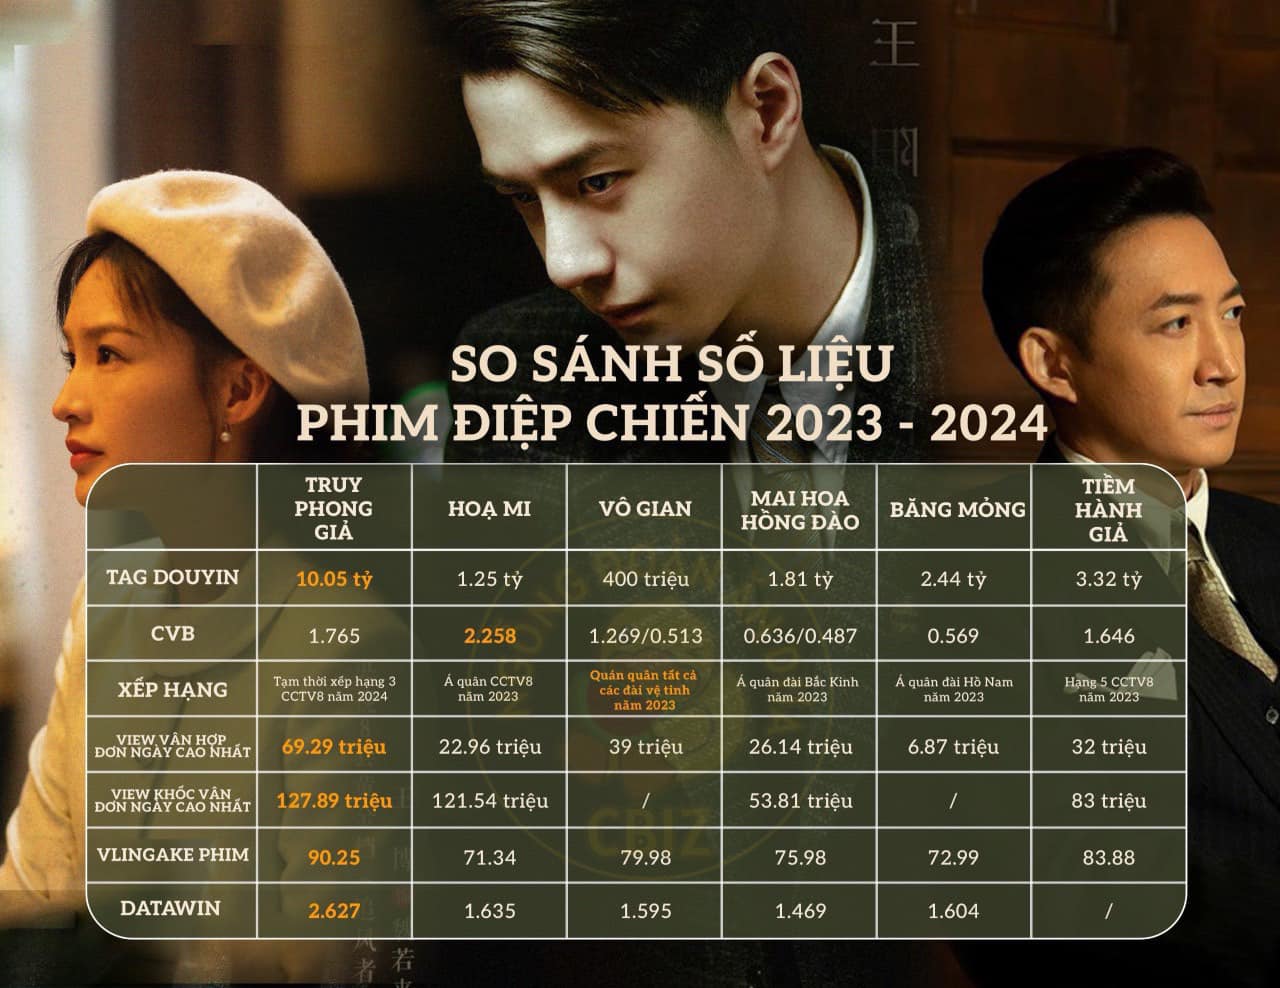 So sánh số liệu phim điệp chiến: Truy Phong Giả có thành tích toàn diện, nhưng vẫn bị phim của Bành Tiểu Nhiễm 'lấn át' - Ảnh 1